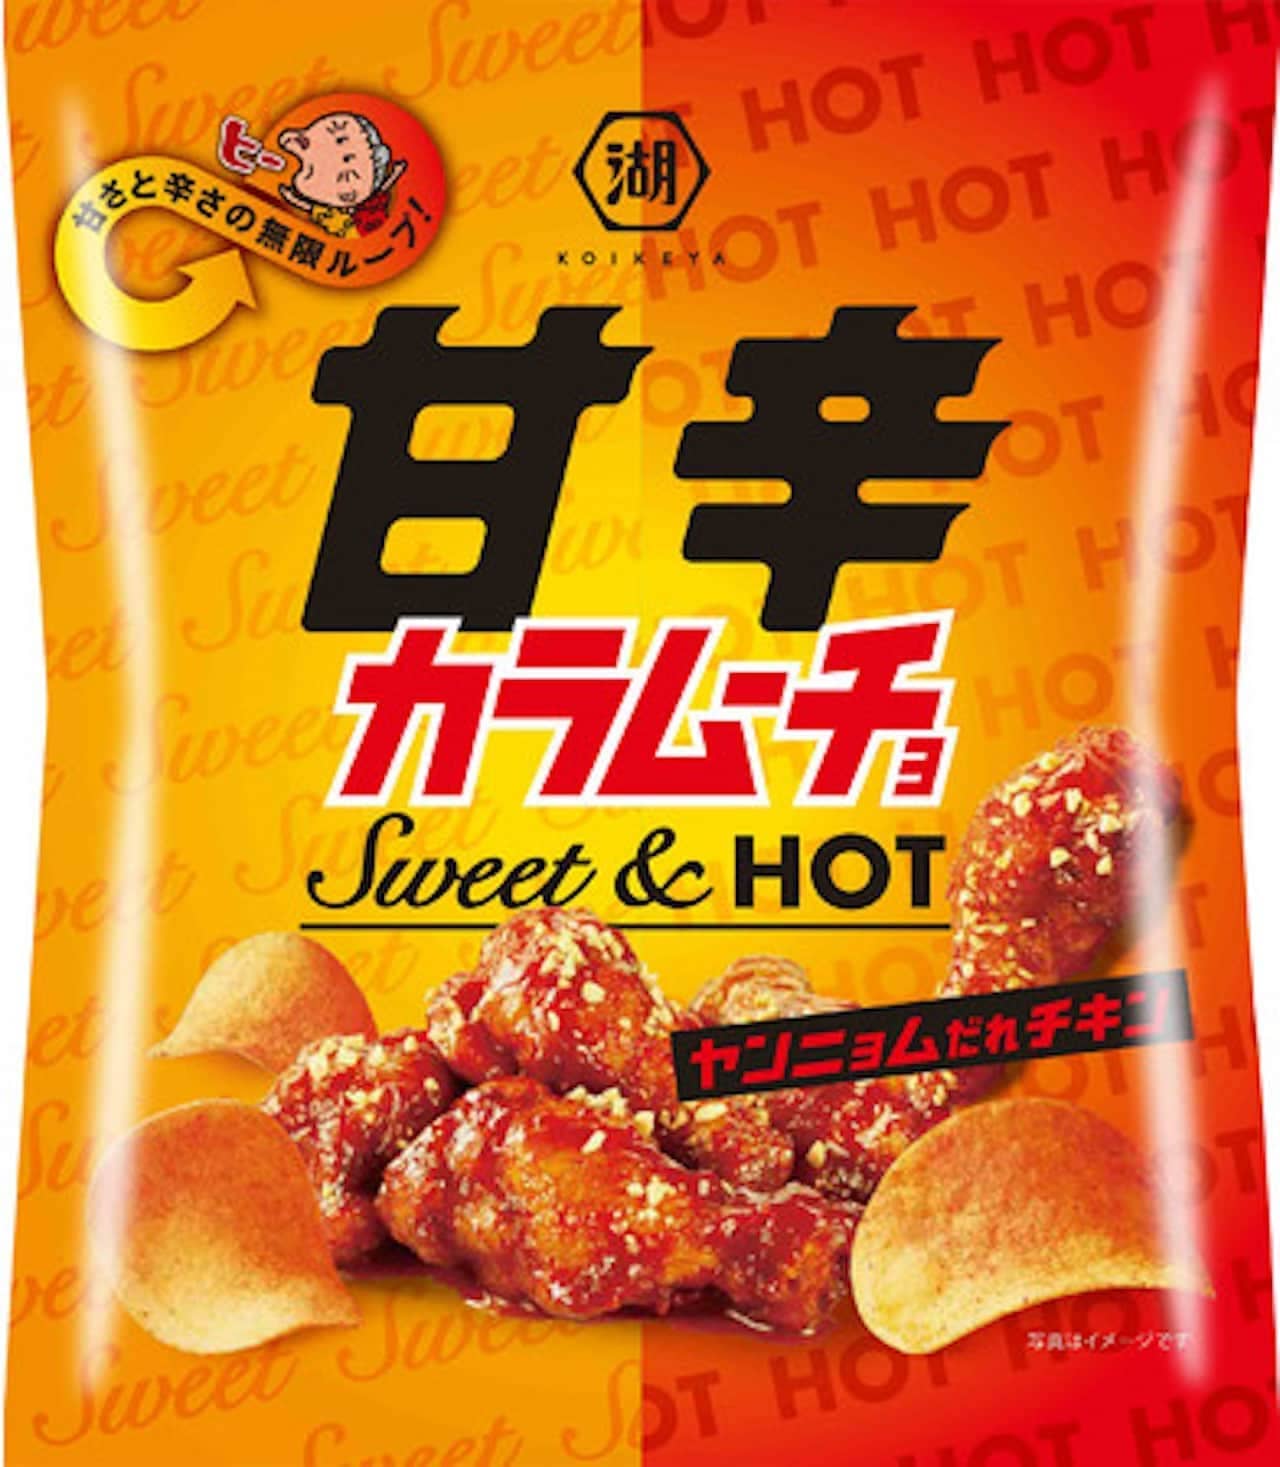 Karamucho "Sweet and spicy Karamucho Yangnyeom Who's Chicken"